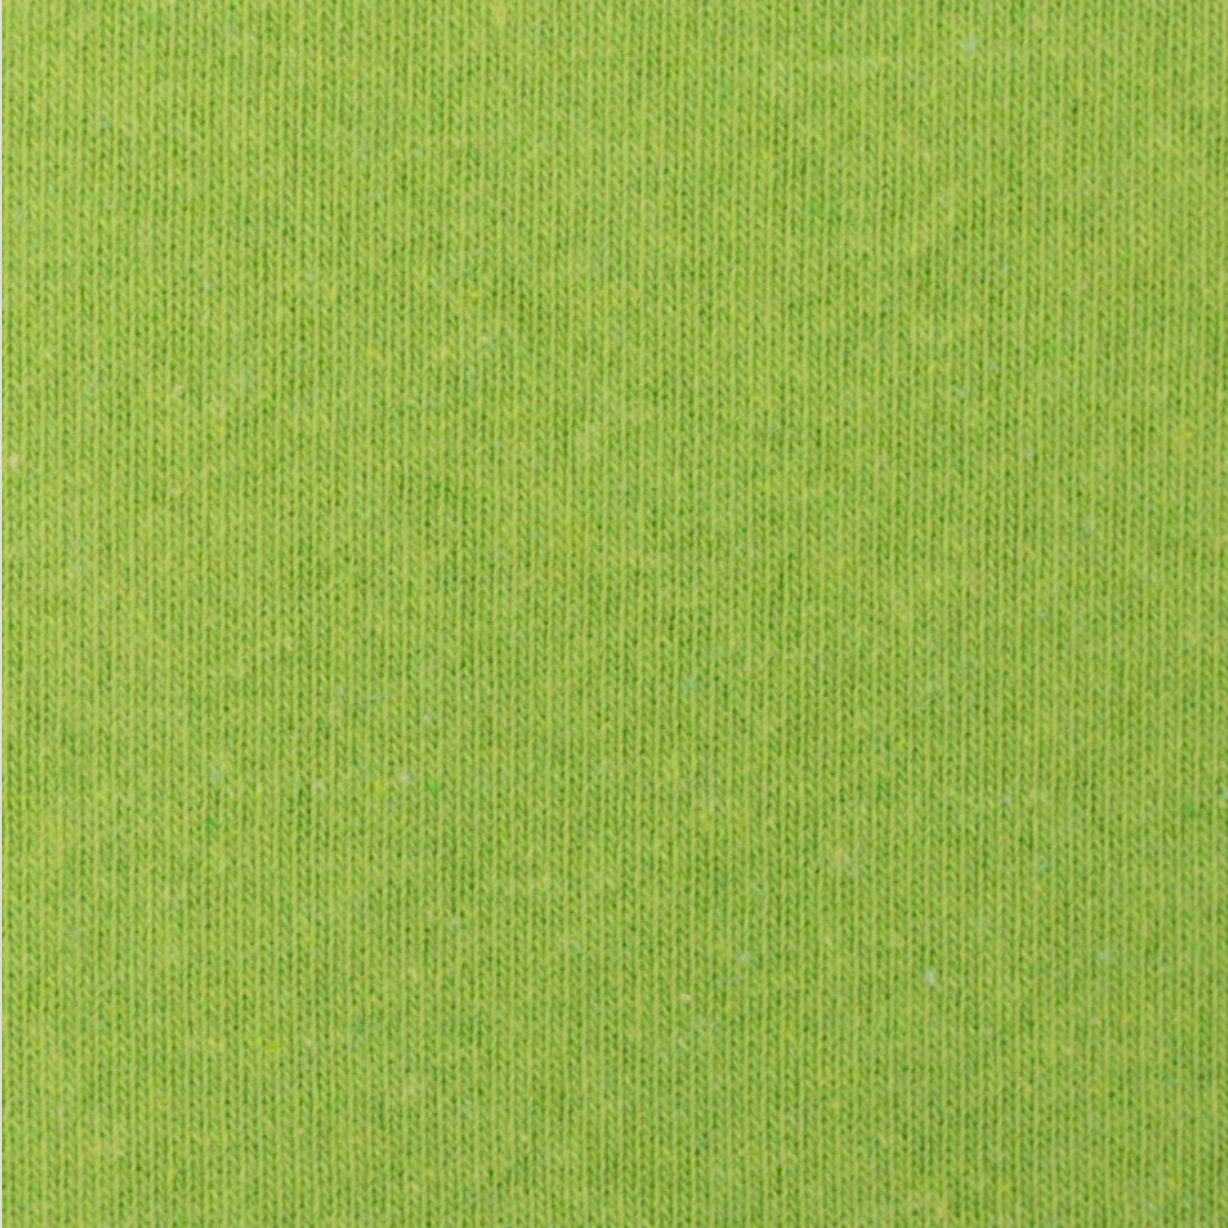 Strick Bene - grün apfelgrün kiwigrün (Spezial 2022)